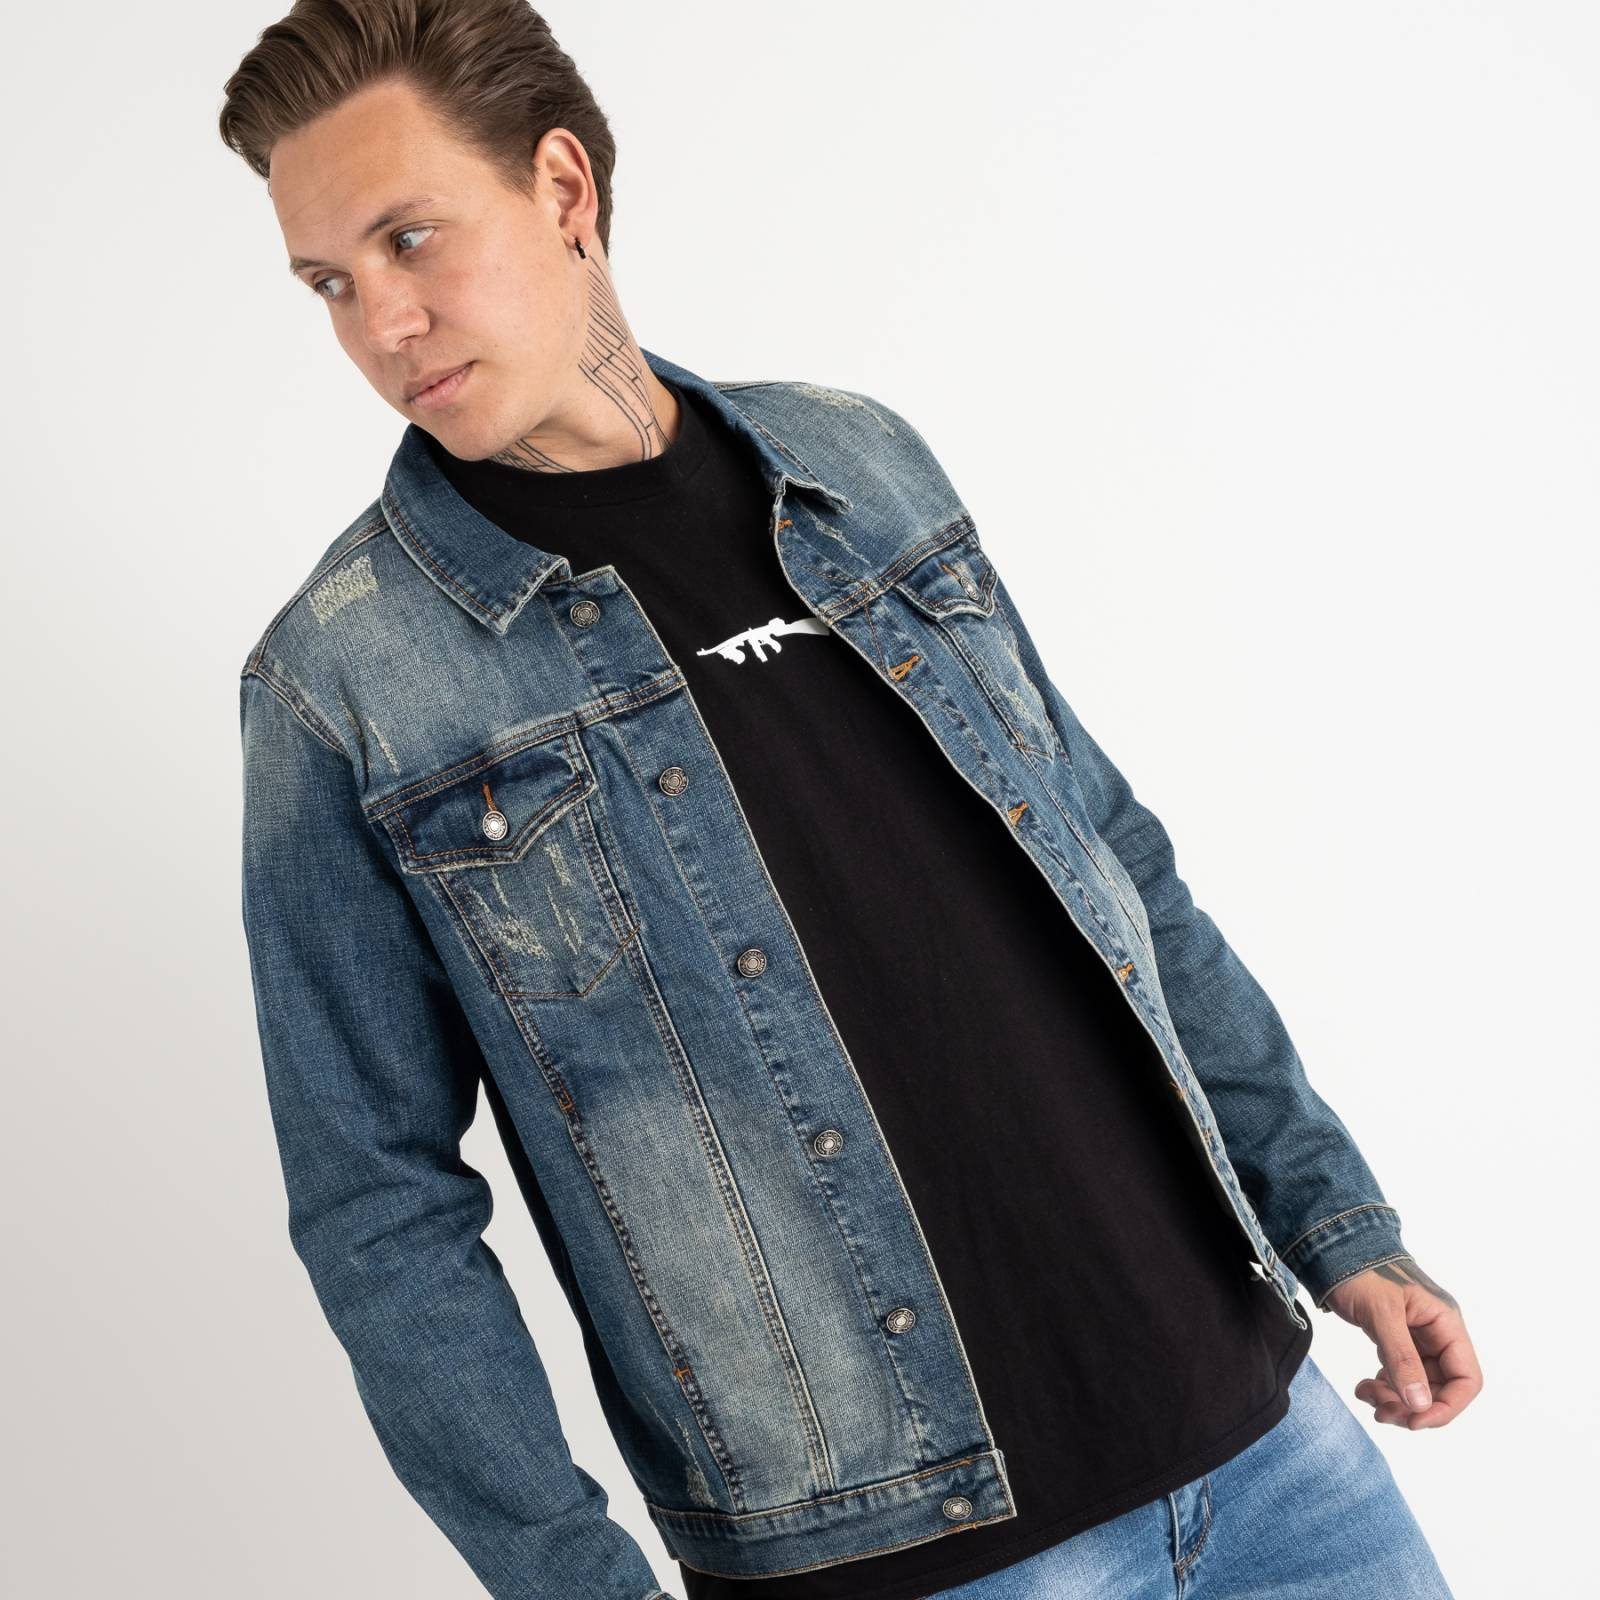 1002 Fang джинсовая куртка темно-синяя стрейчевая (5 ед. размеры: L.XL.2XL.3XL.4XL)